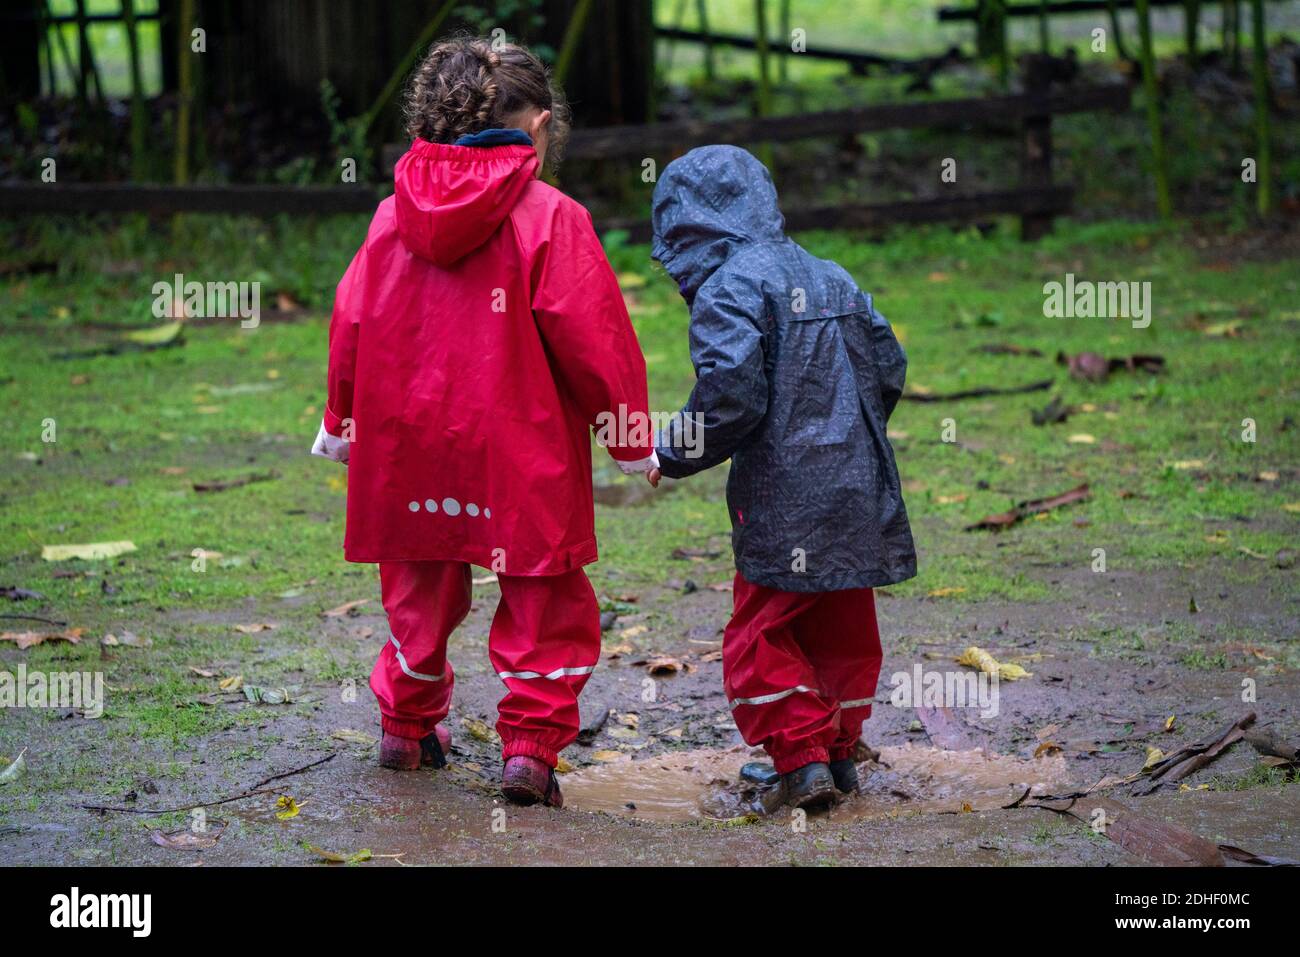 Deux jeunes enfants s'amusent à jouer dehors dans la boue tout en portant des imperméables en coloful Banque D'Images